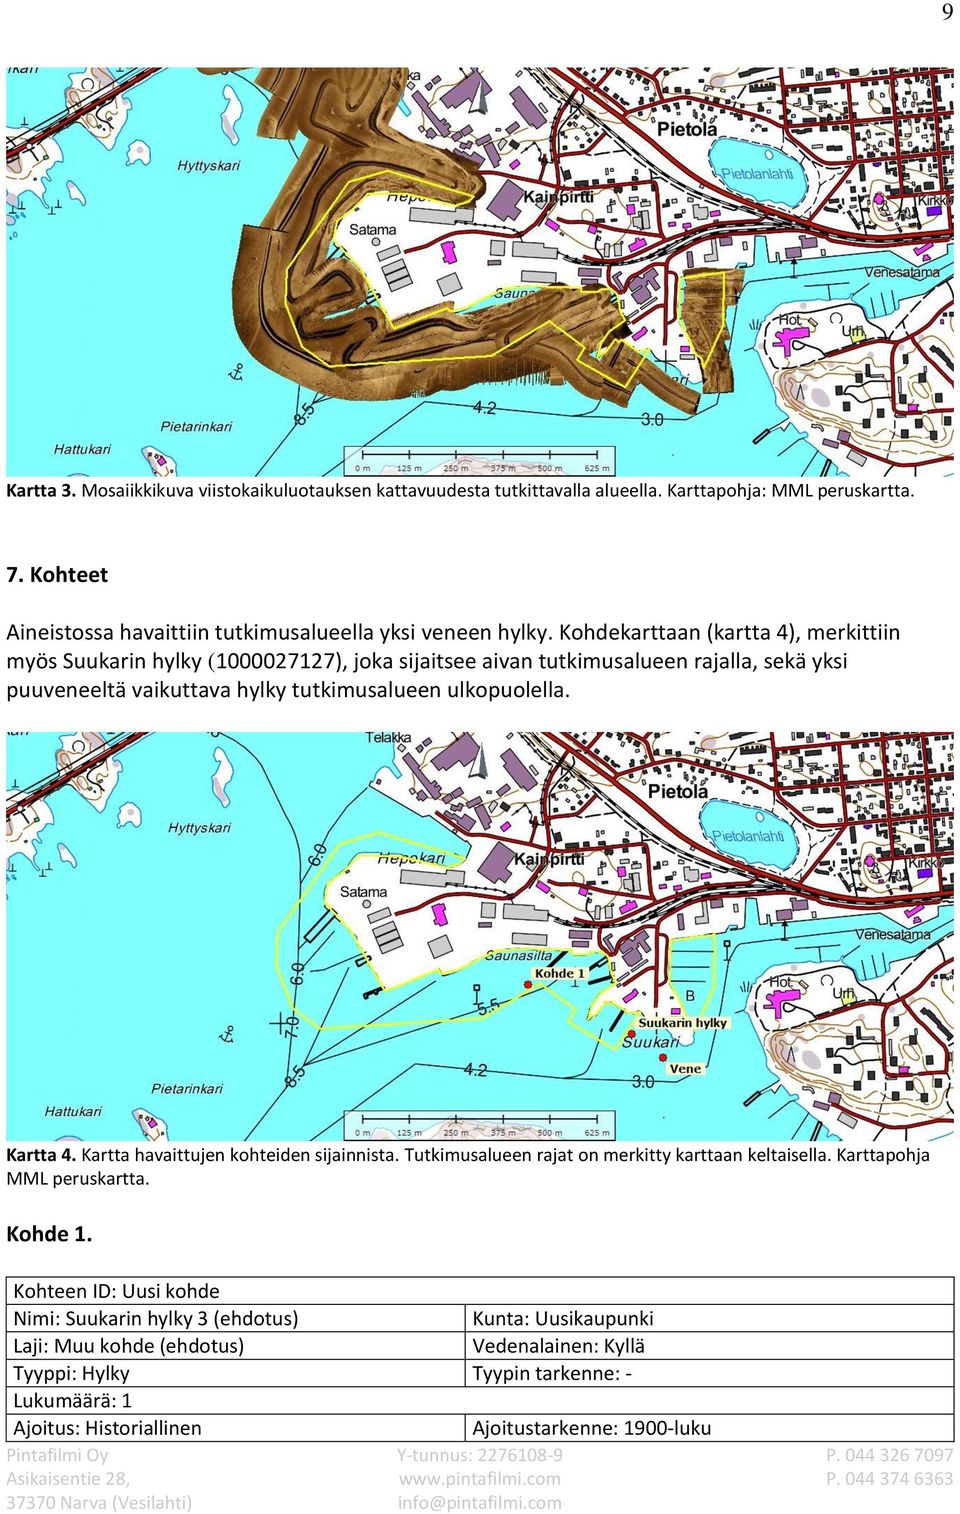 Kohdekarttaan (kartta 4), merkittiin myös Suukarin hylky (1000027127), joka sijaitsee aivan tutkimusalueen rajalla, sekä yksi puuveneeltä vaikuttava hylky tutkimusalueen ulkopuolella.